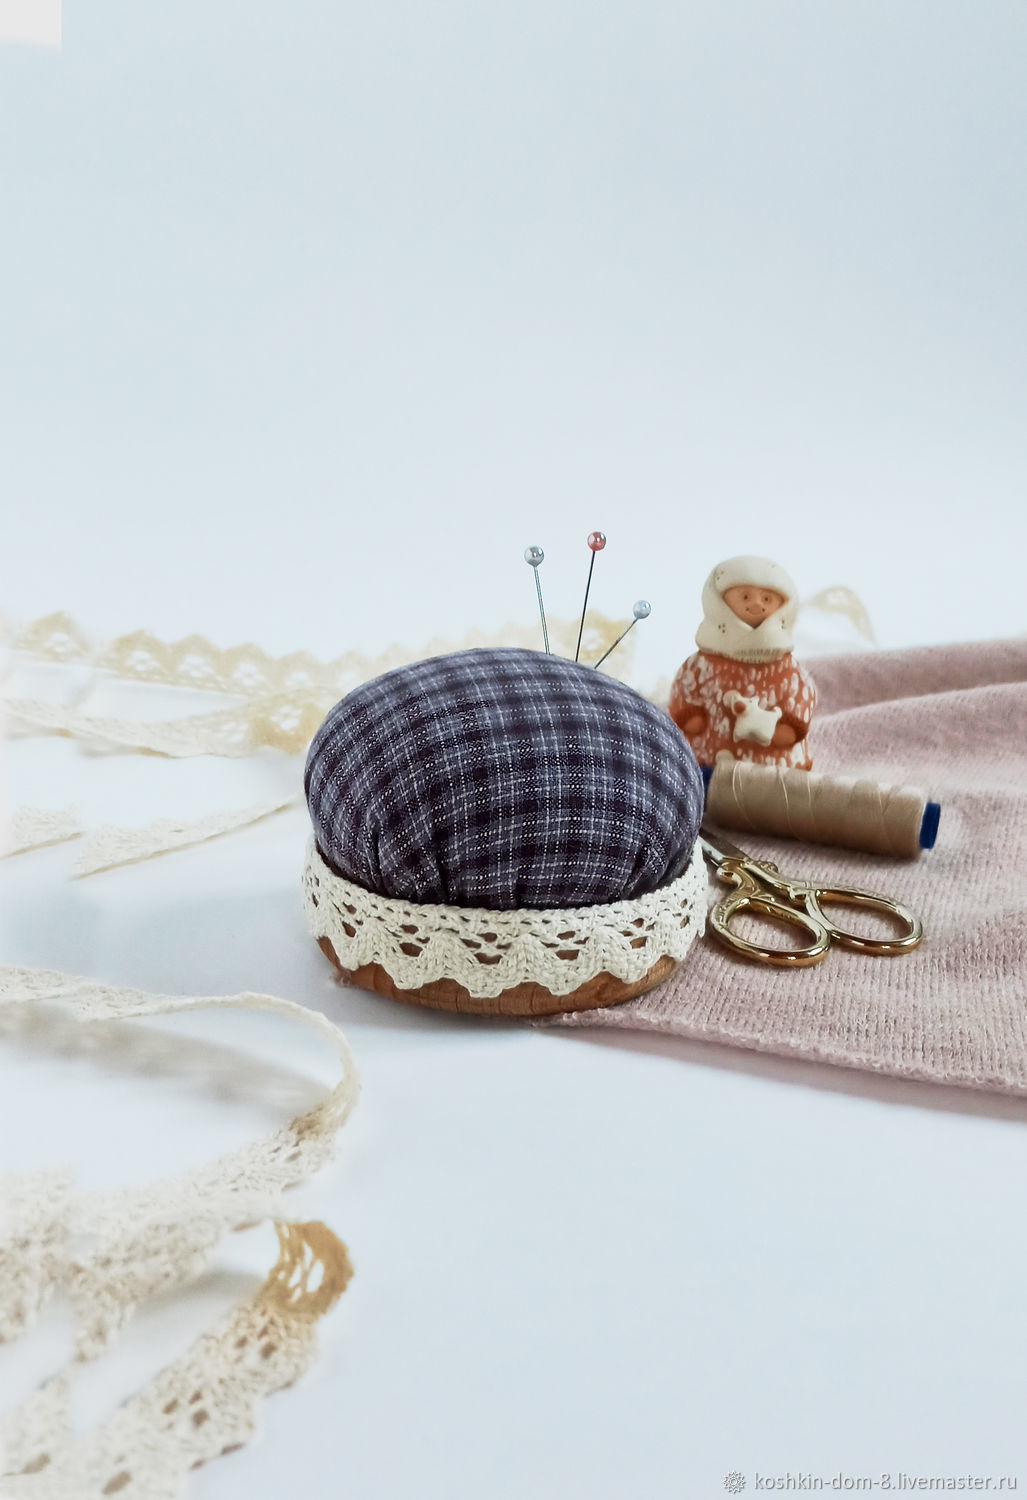 Купити Игольница шляпка, подарок, сувенир, през | irhidey.ru